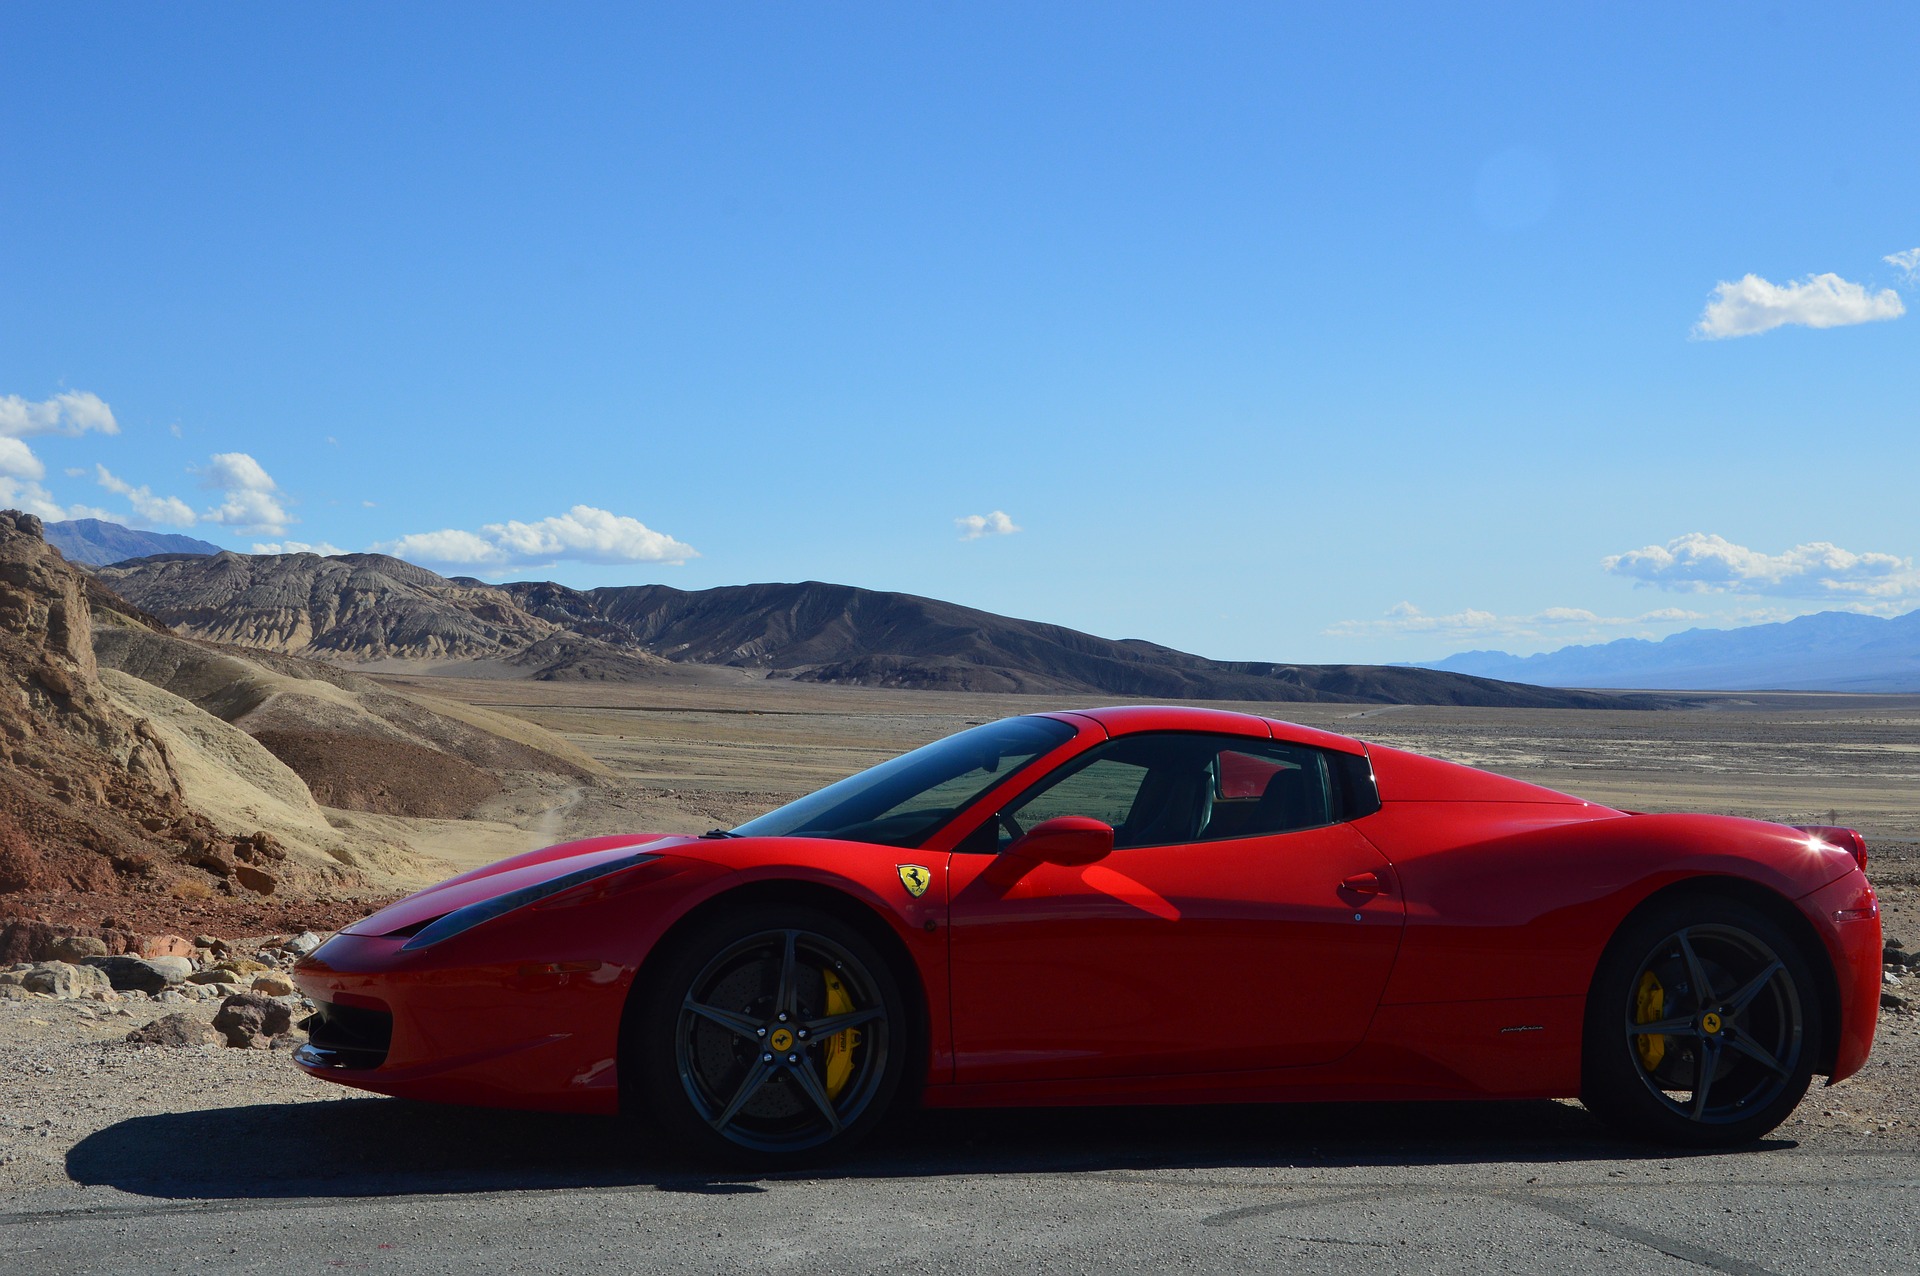 Wie wäre es mit einem Ferrari durch die Westküste USA's zu reisen Check24 Mietwagen macht es möglich